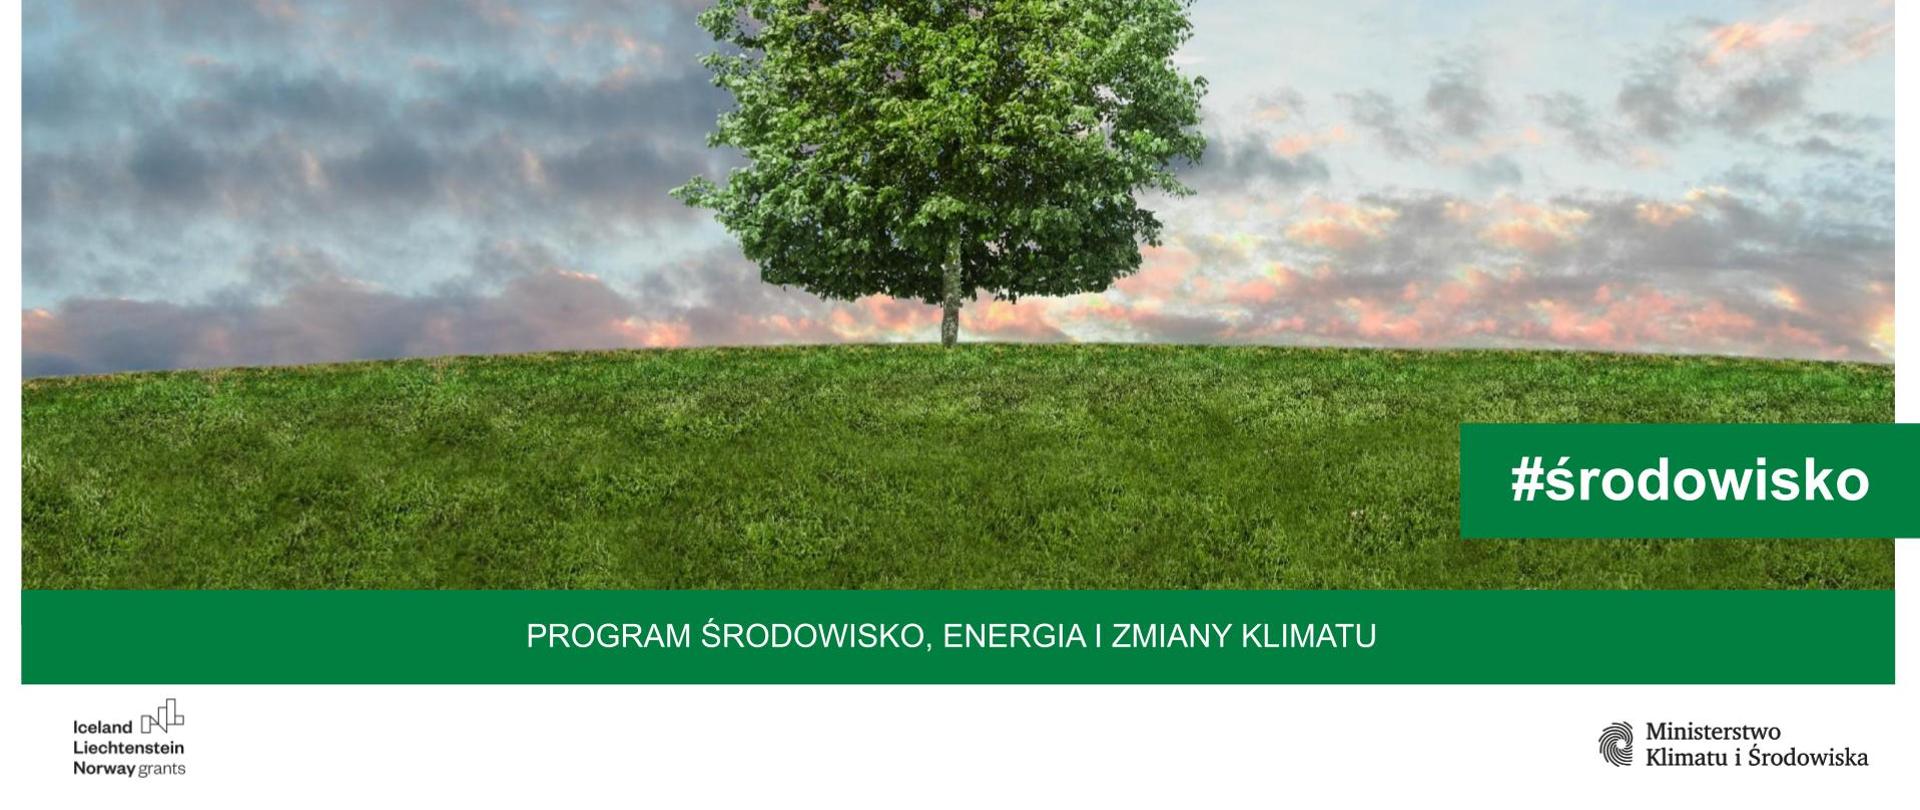 Program Środowisko Energia i Zmiany Klimatu - Usługi świadczone przez główne typy ekosystemów w Polsce – podejście stosowane